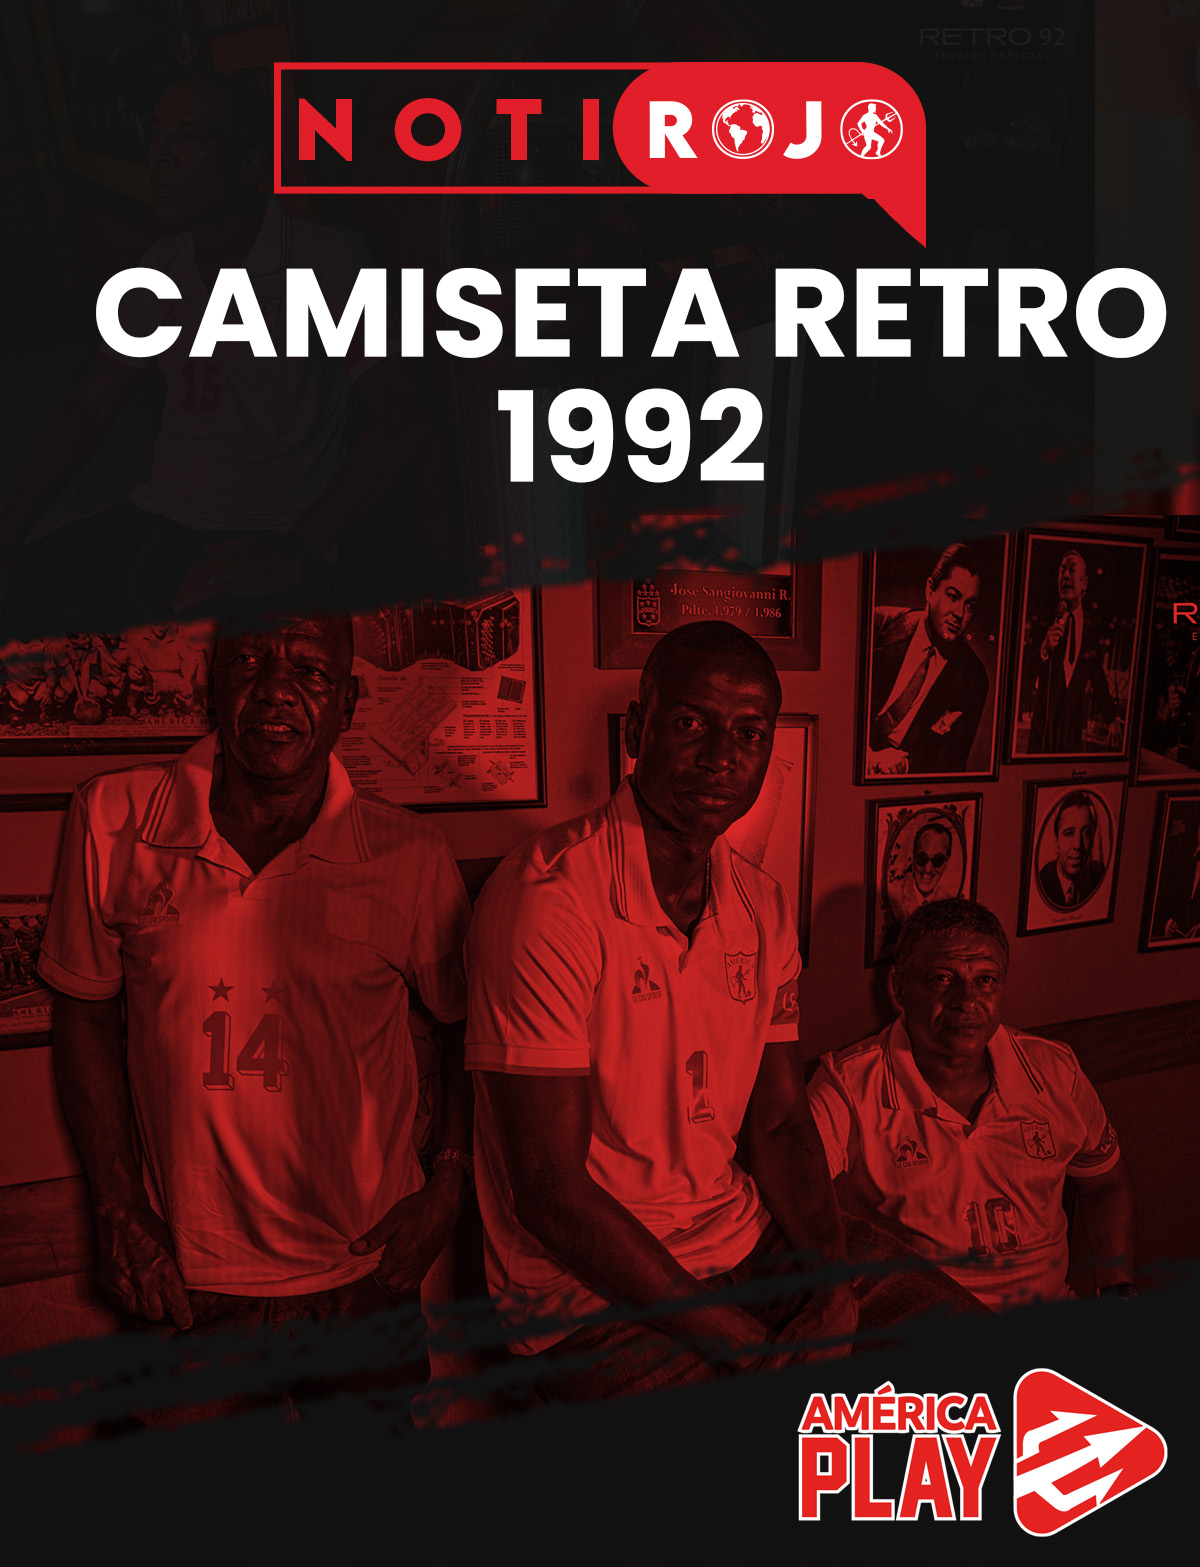 NOTI ROJO- DETRÁS DE CÁMARAS CAMISETA RETRO 1992